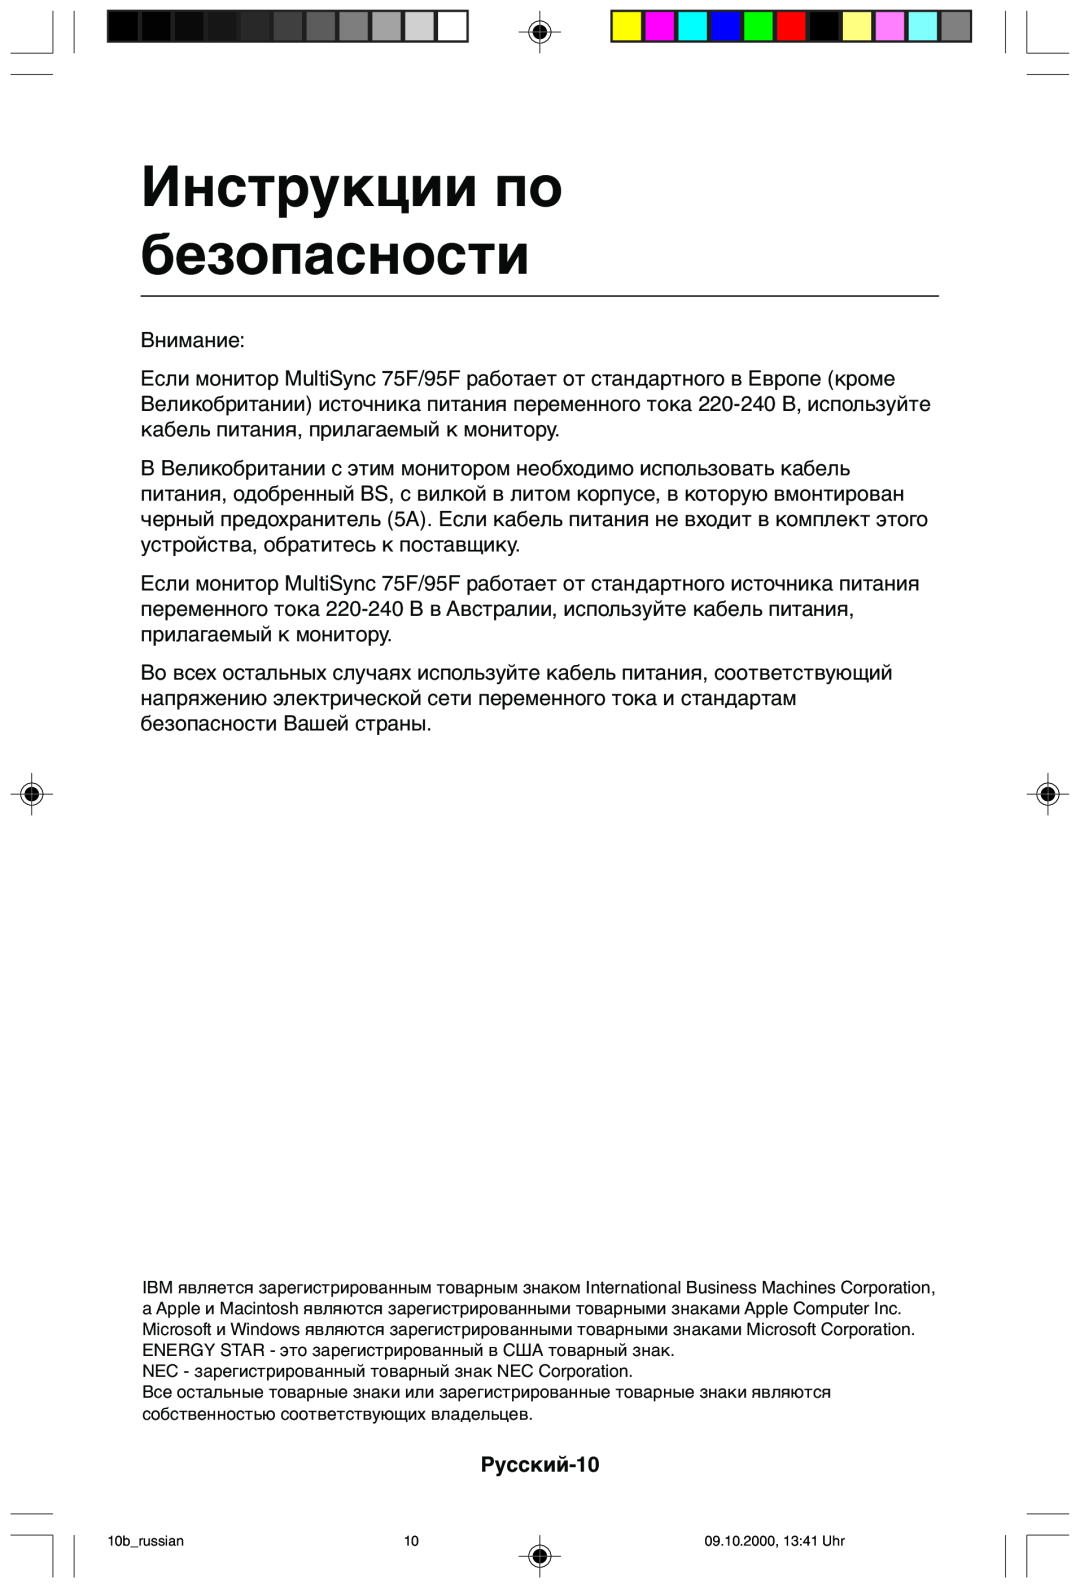 NEC 95F user manual Инструкции по безопасности, Русский-10 